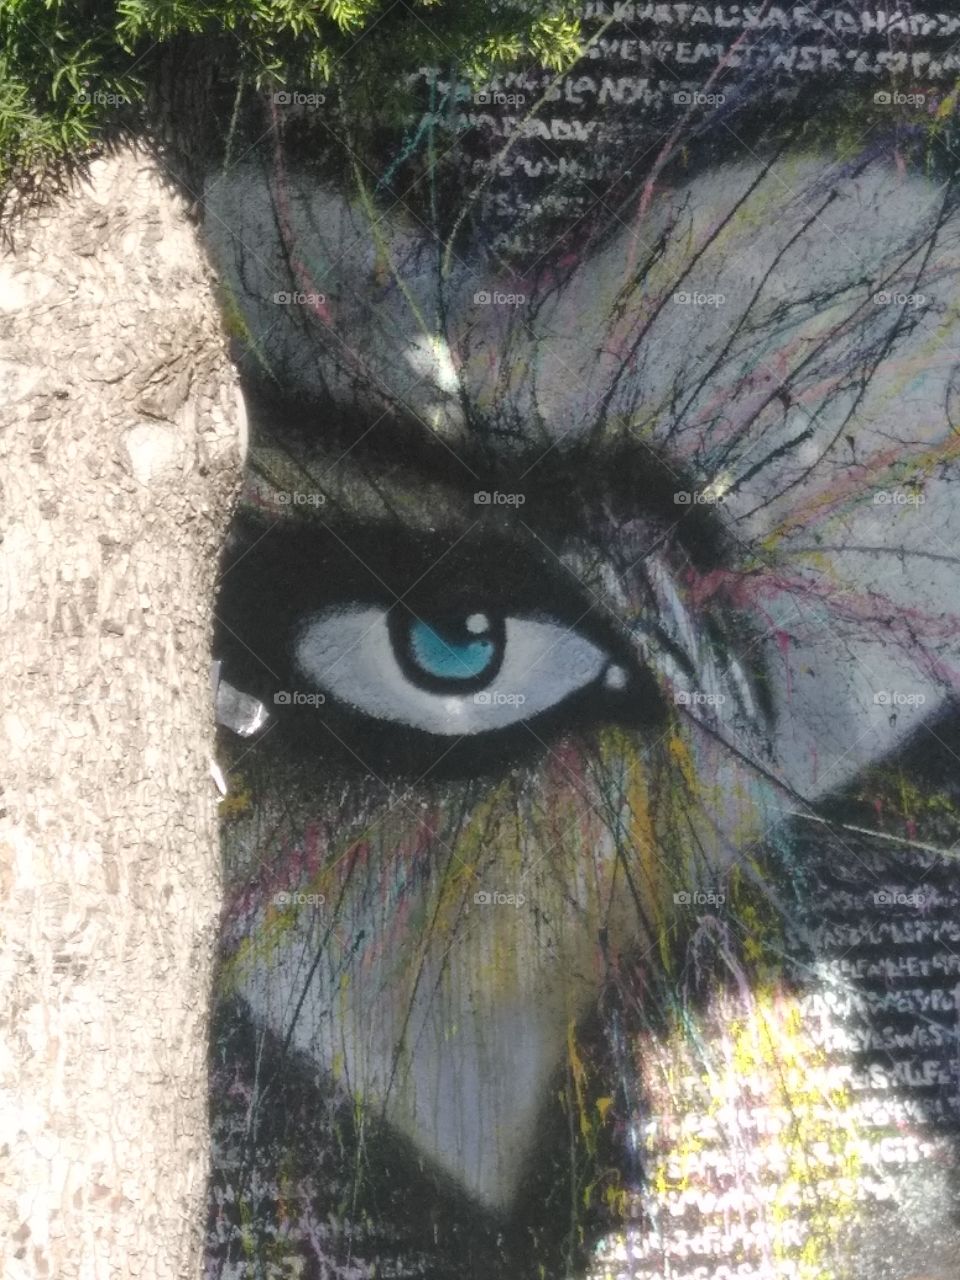 Spying Street Art in LA